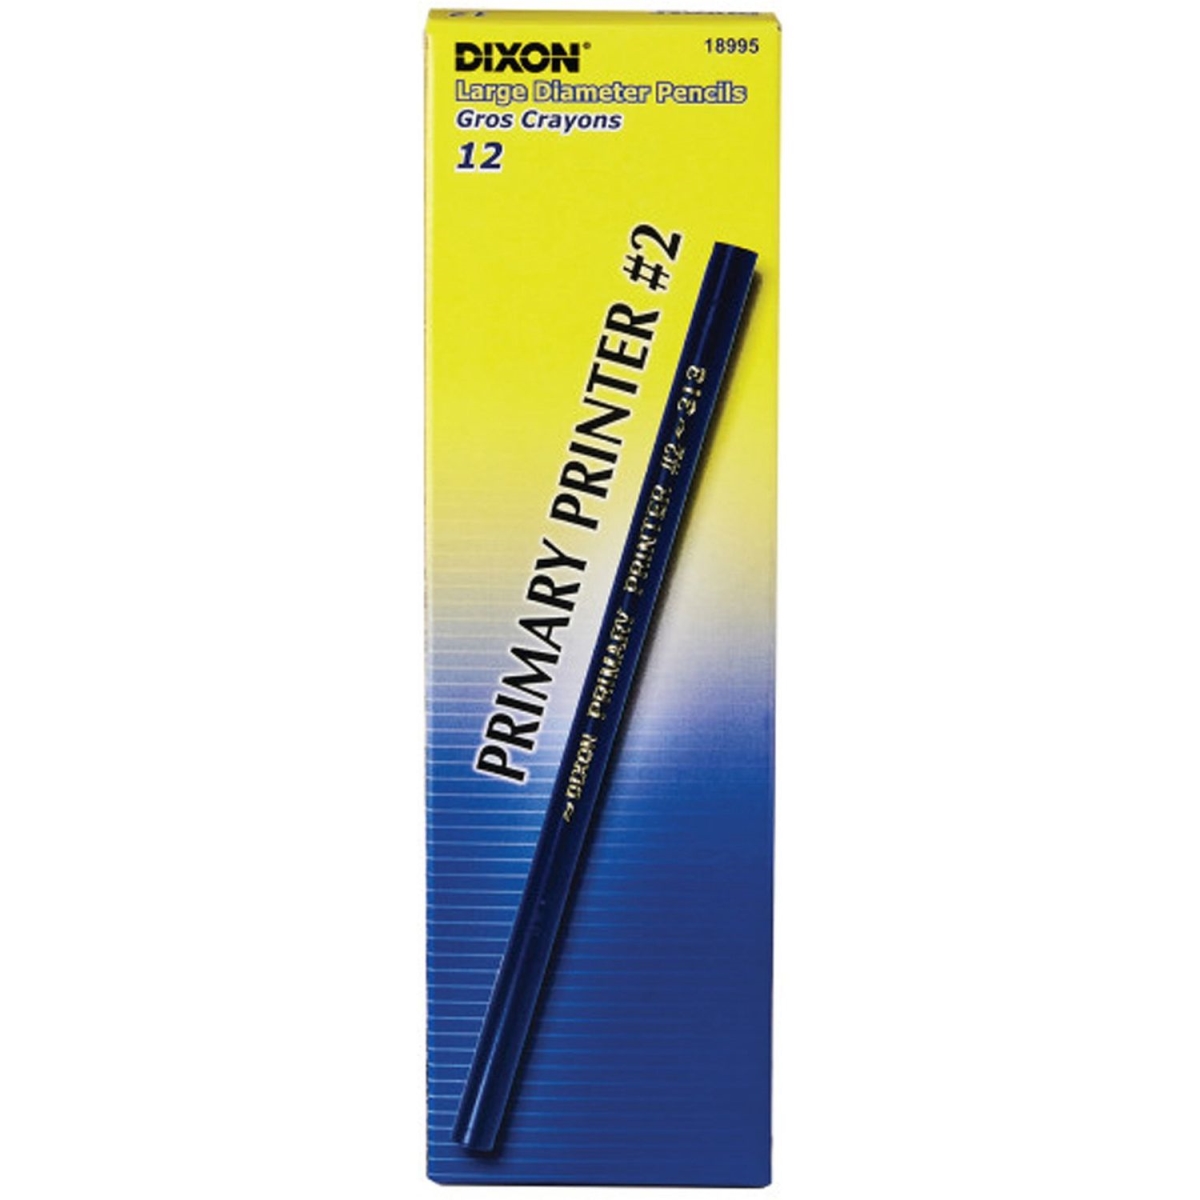 Picture of Dixon DIXX18995 No.1 Primary Printer Pencil - 12 Count